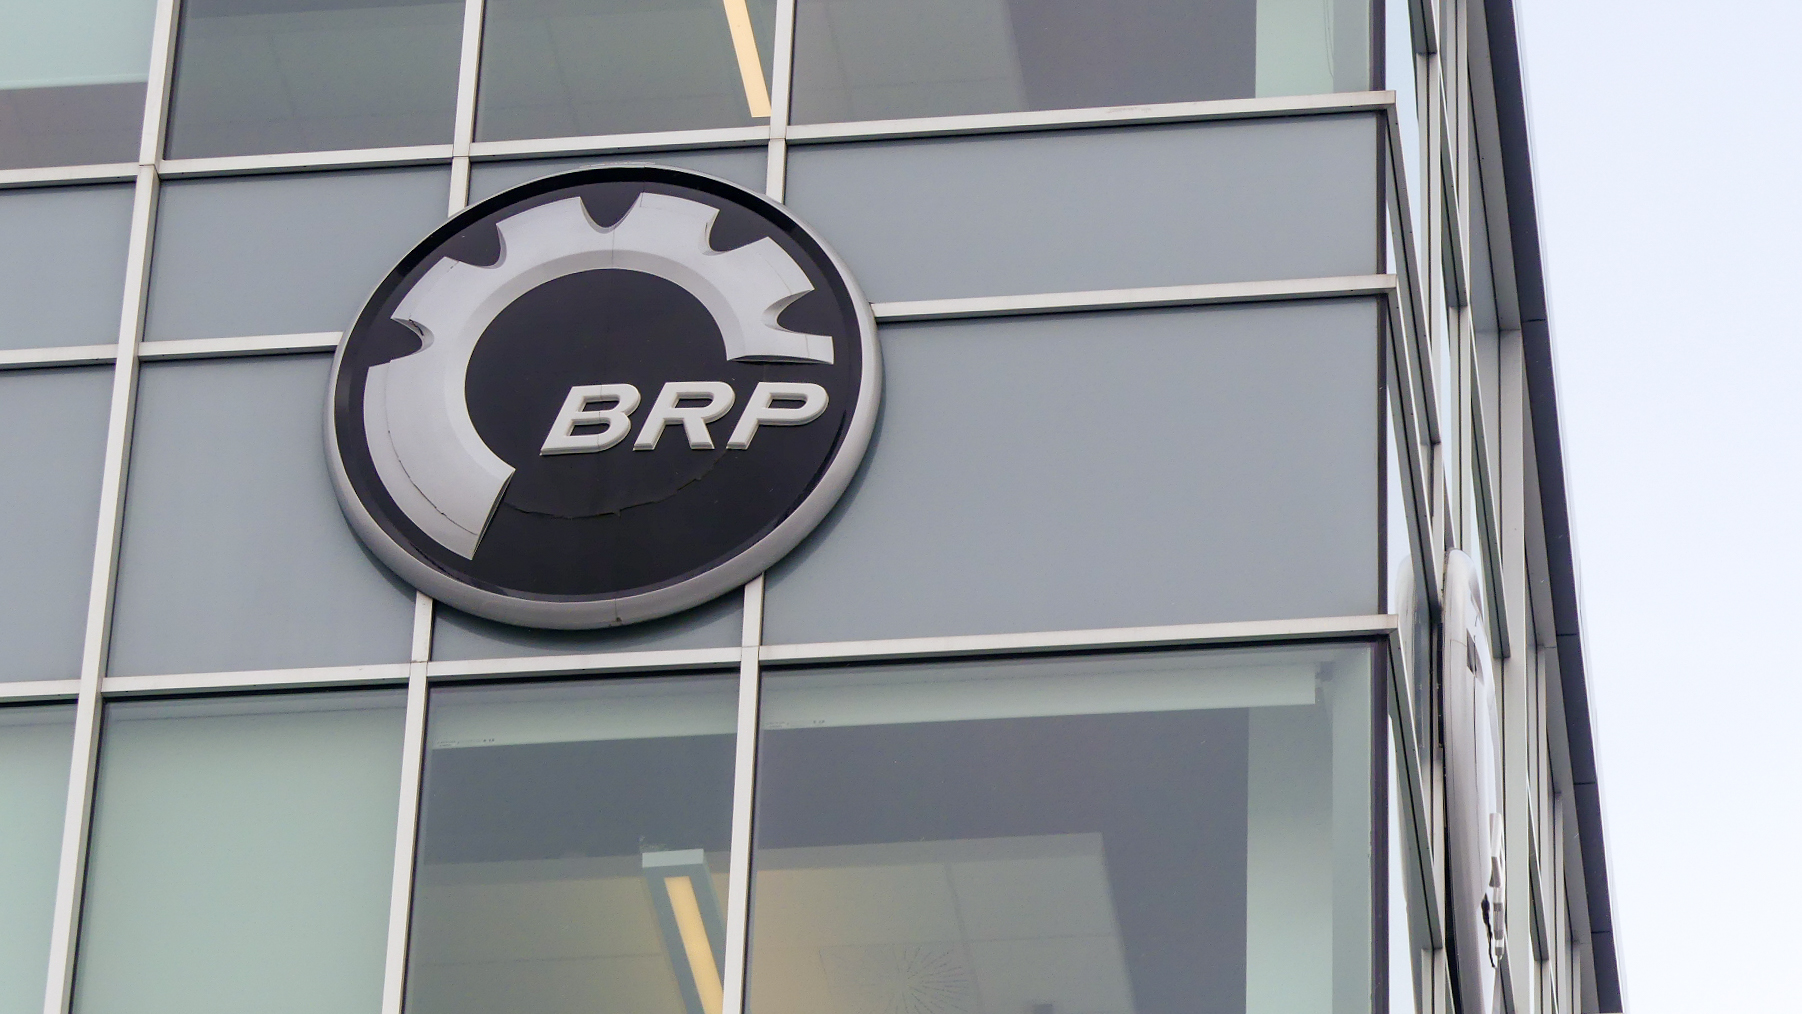 Logo de BRP sur un édifice